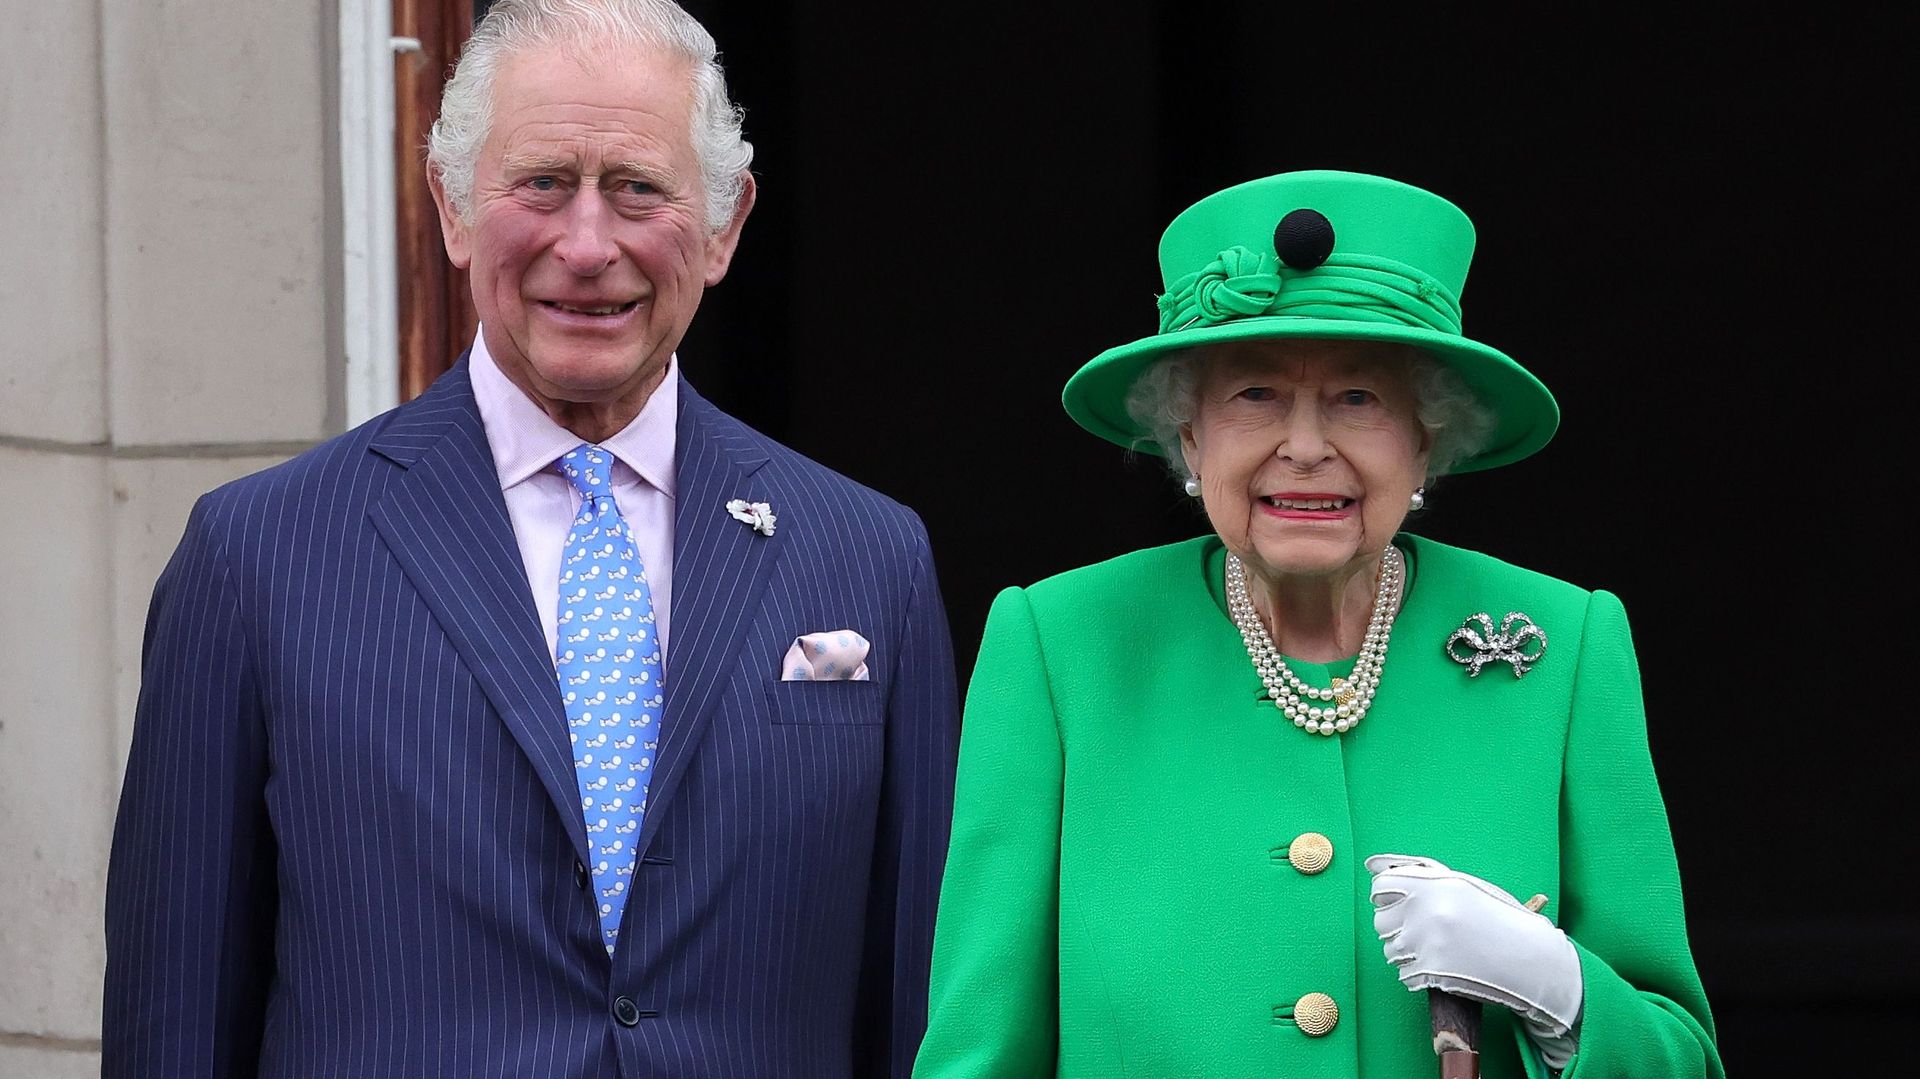 À l’occasion du récent Jubilé de Platine, une image tout en symbole : le futur Charles III et Elizabeth II, la continuité de la monarchie.